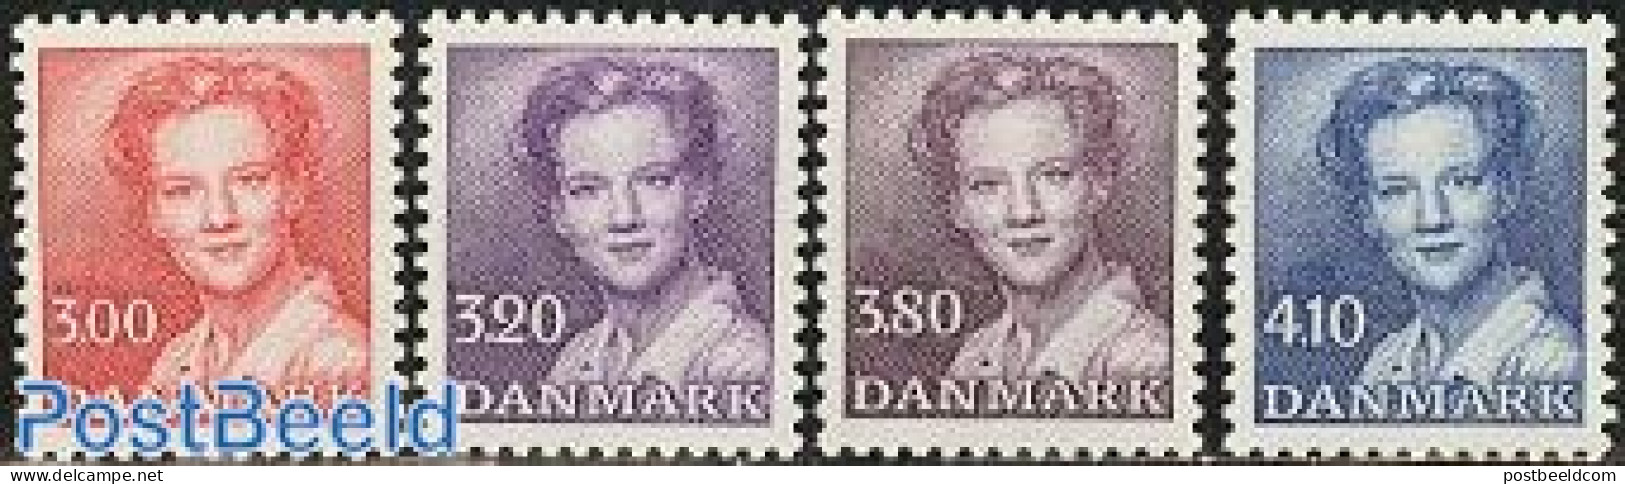 Denmark 1988 Definitives 4v, Mint NH - Unused Stamps